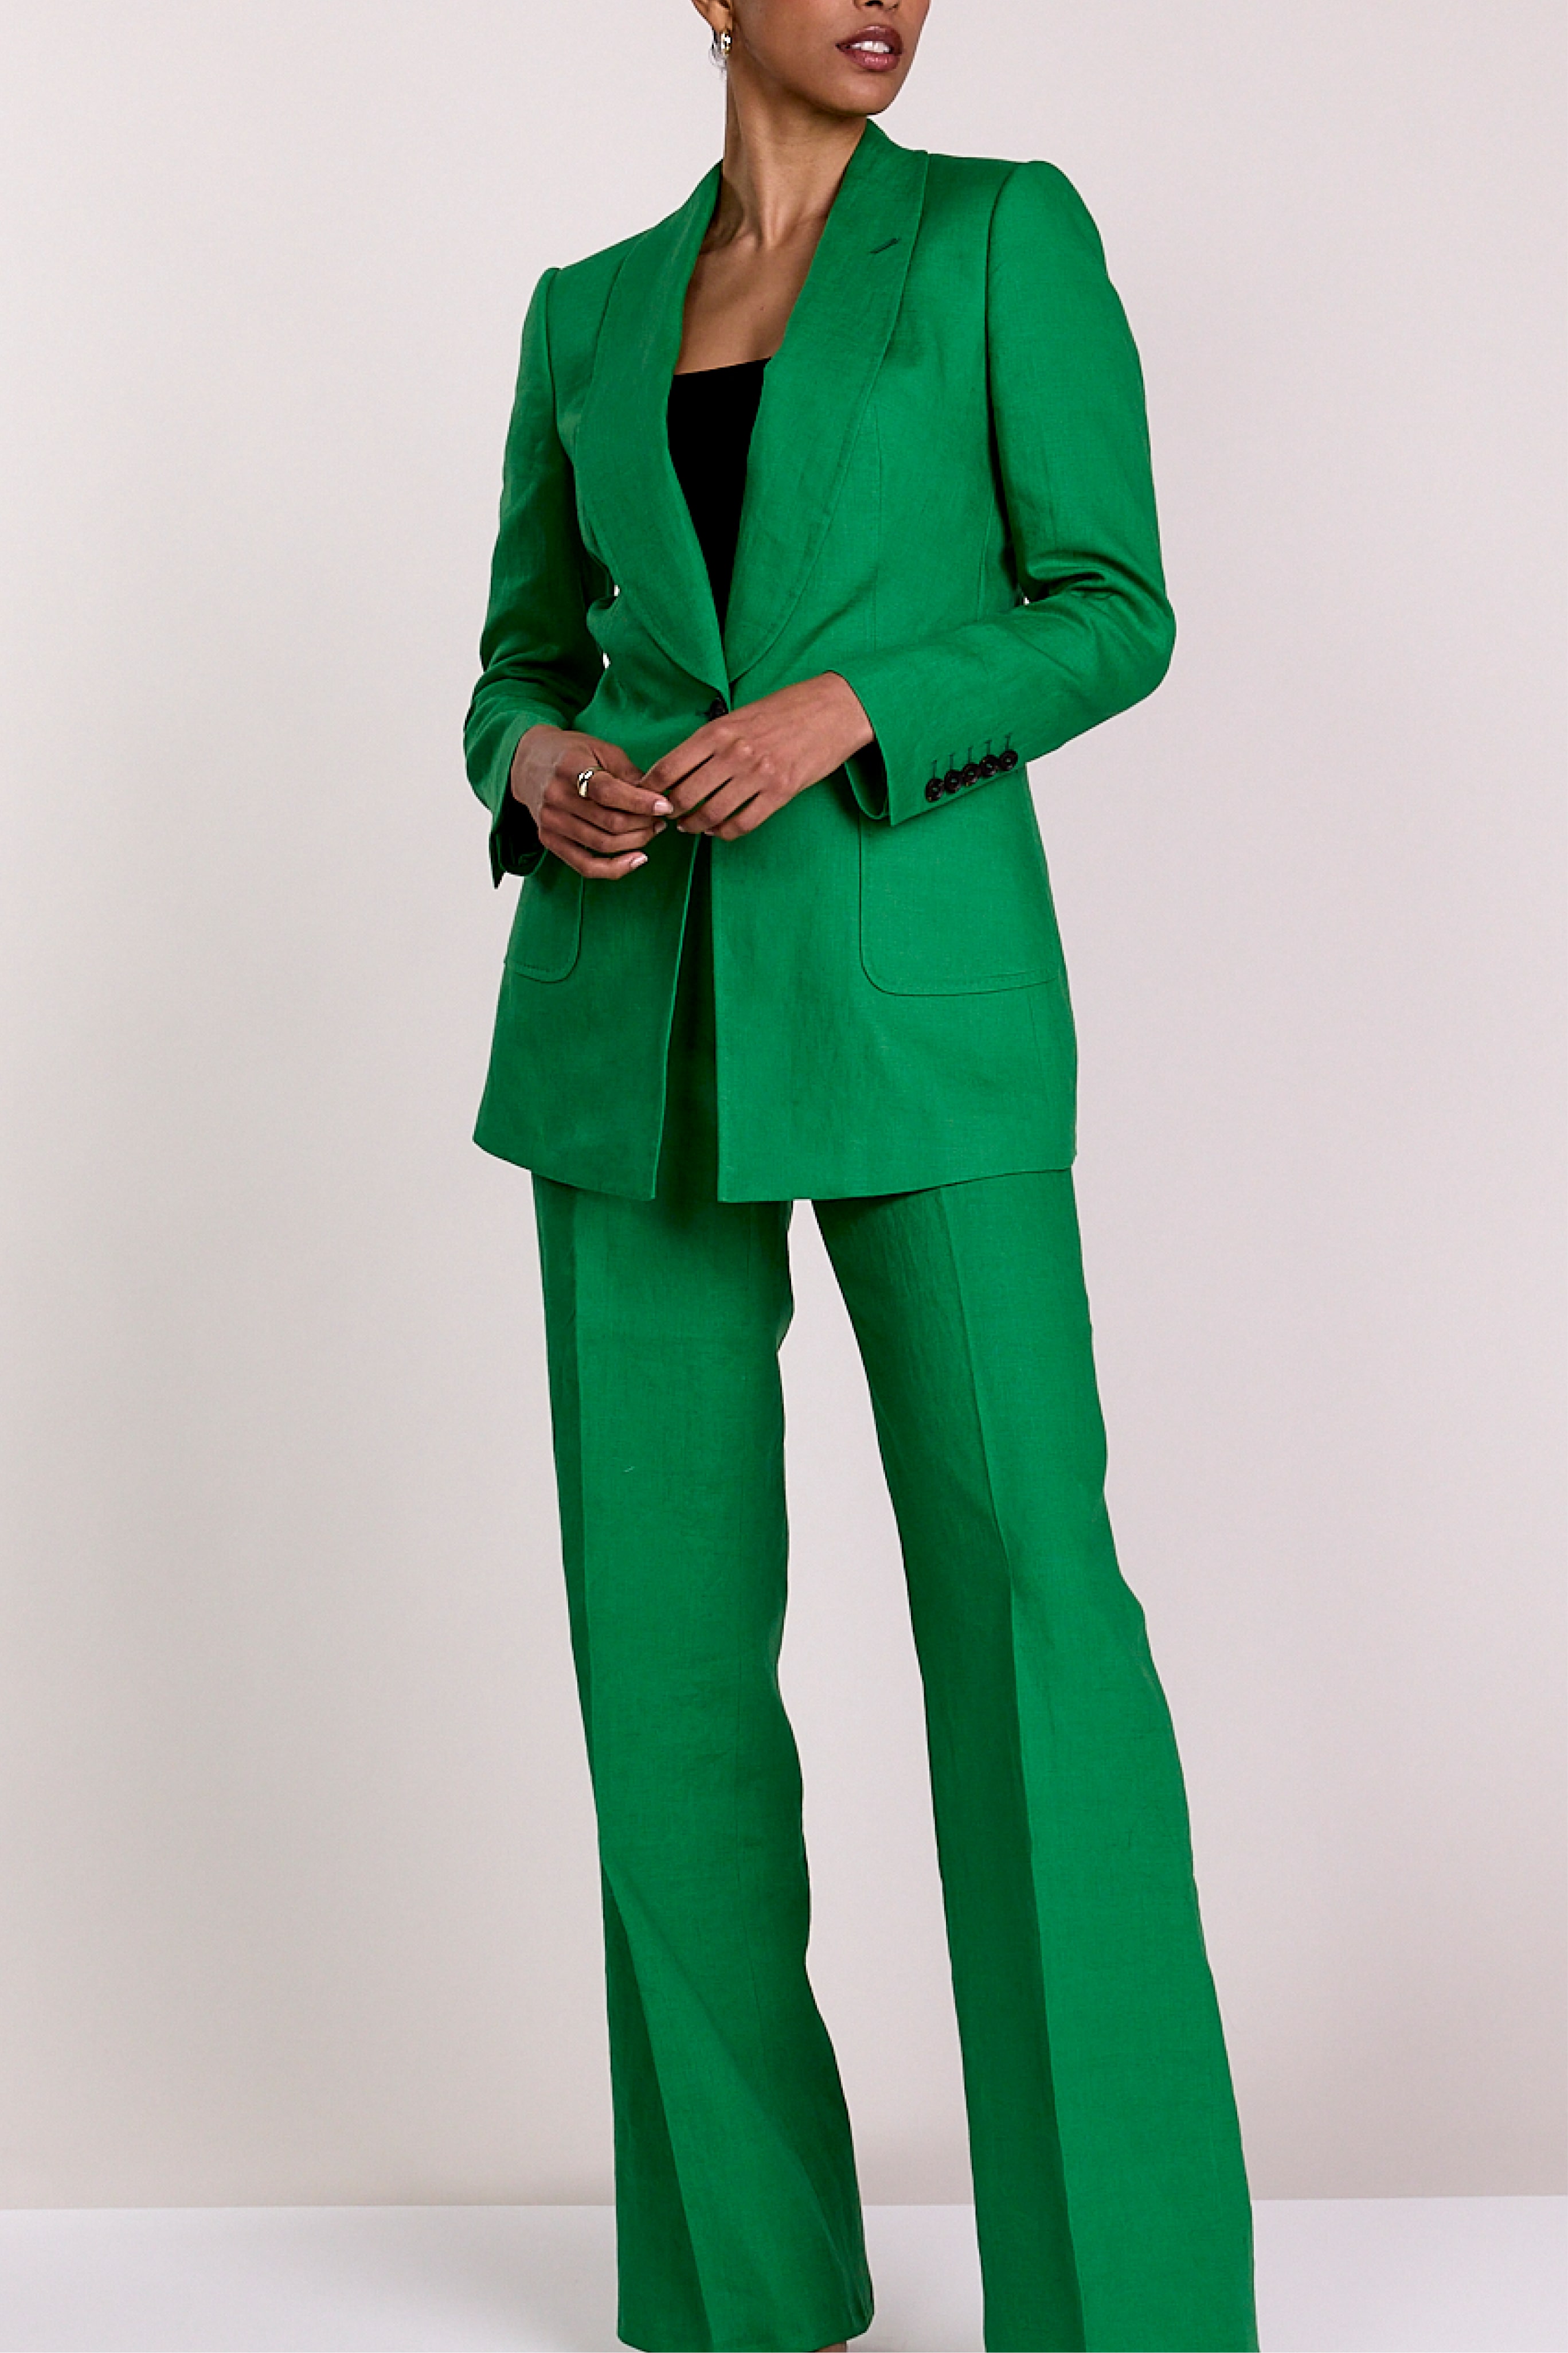 Knot Standard Emerald Green Linen Blazer by Knot Standard